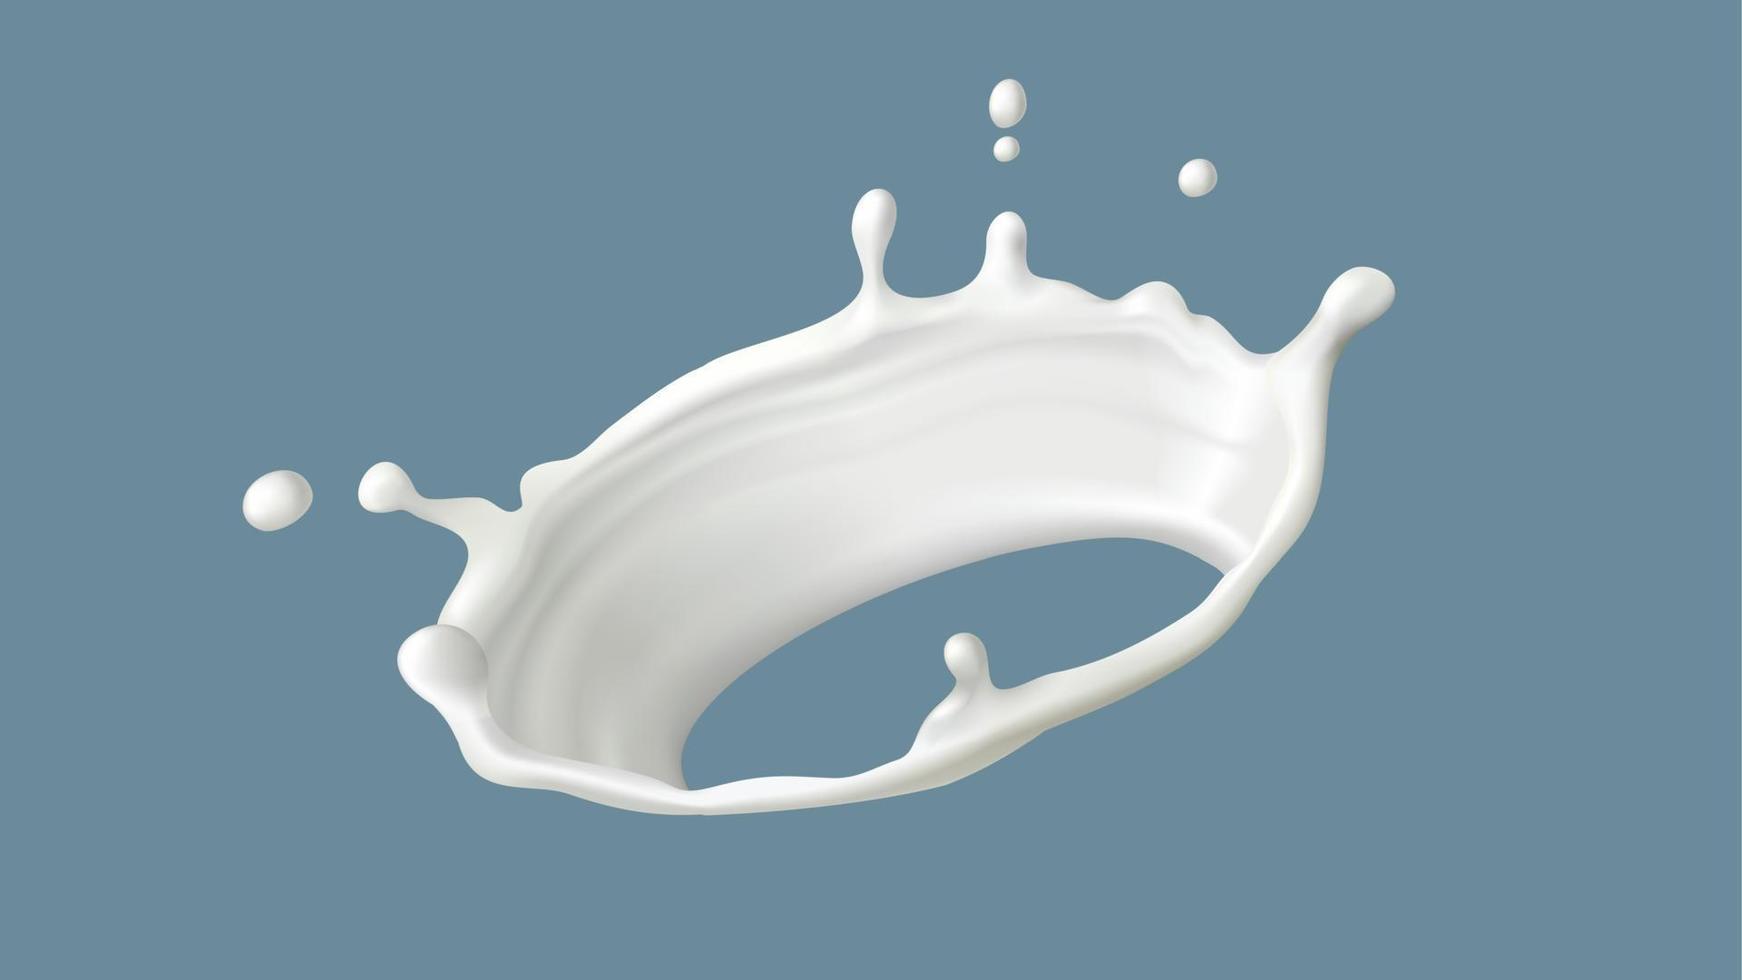 leite respingo ou volta redemoinho com gotas, realista vetor